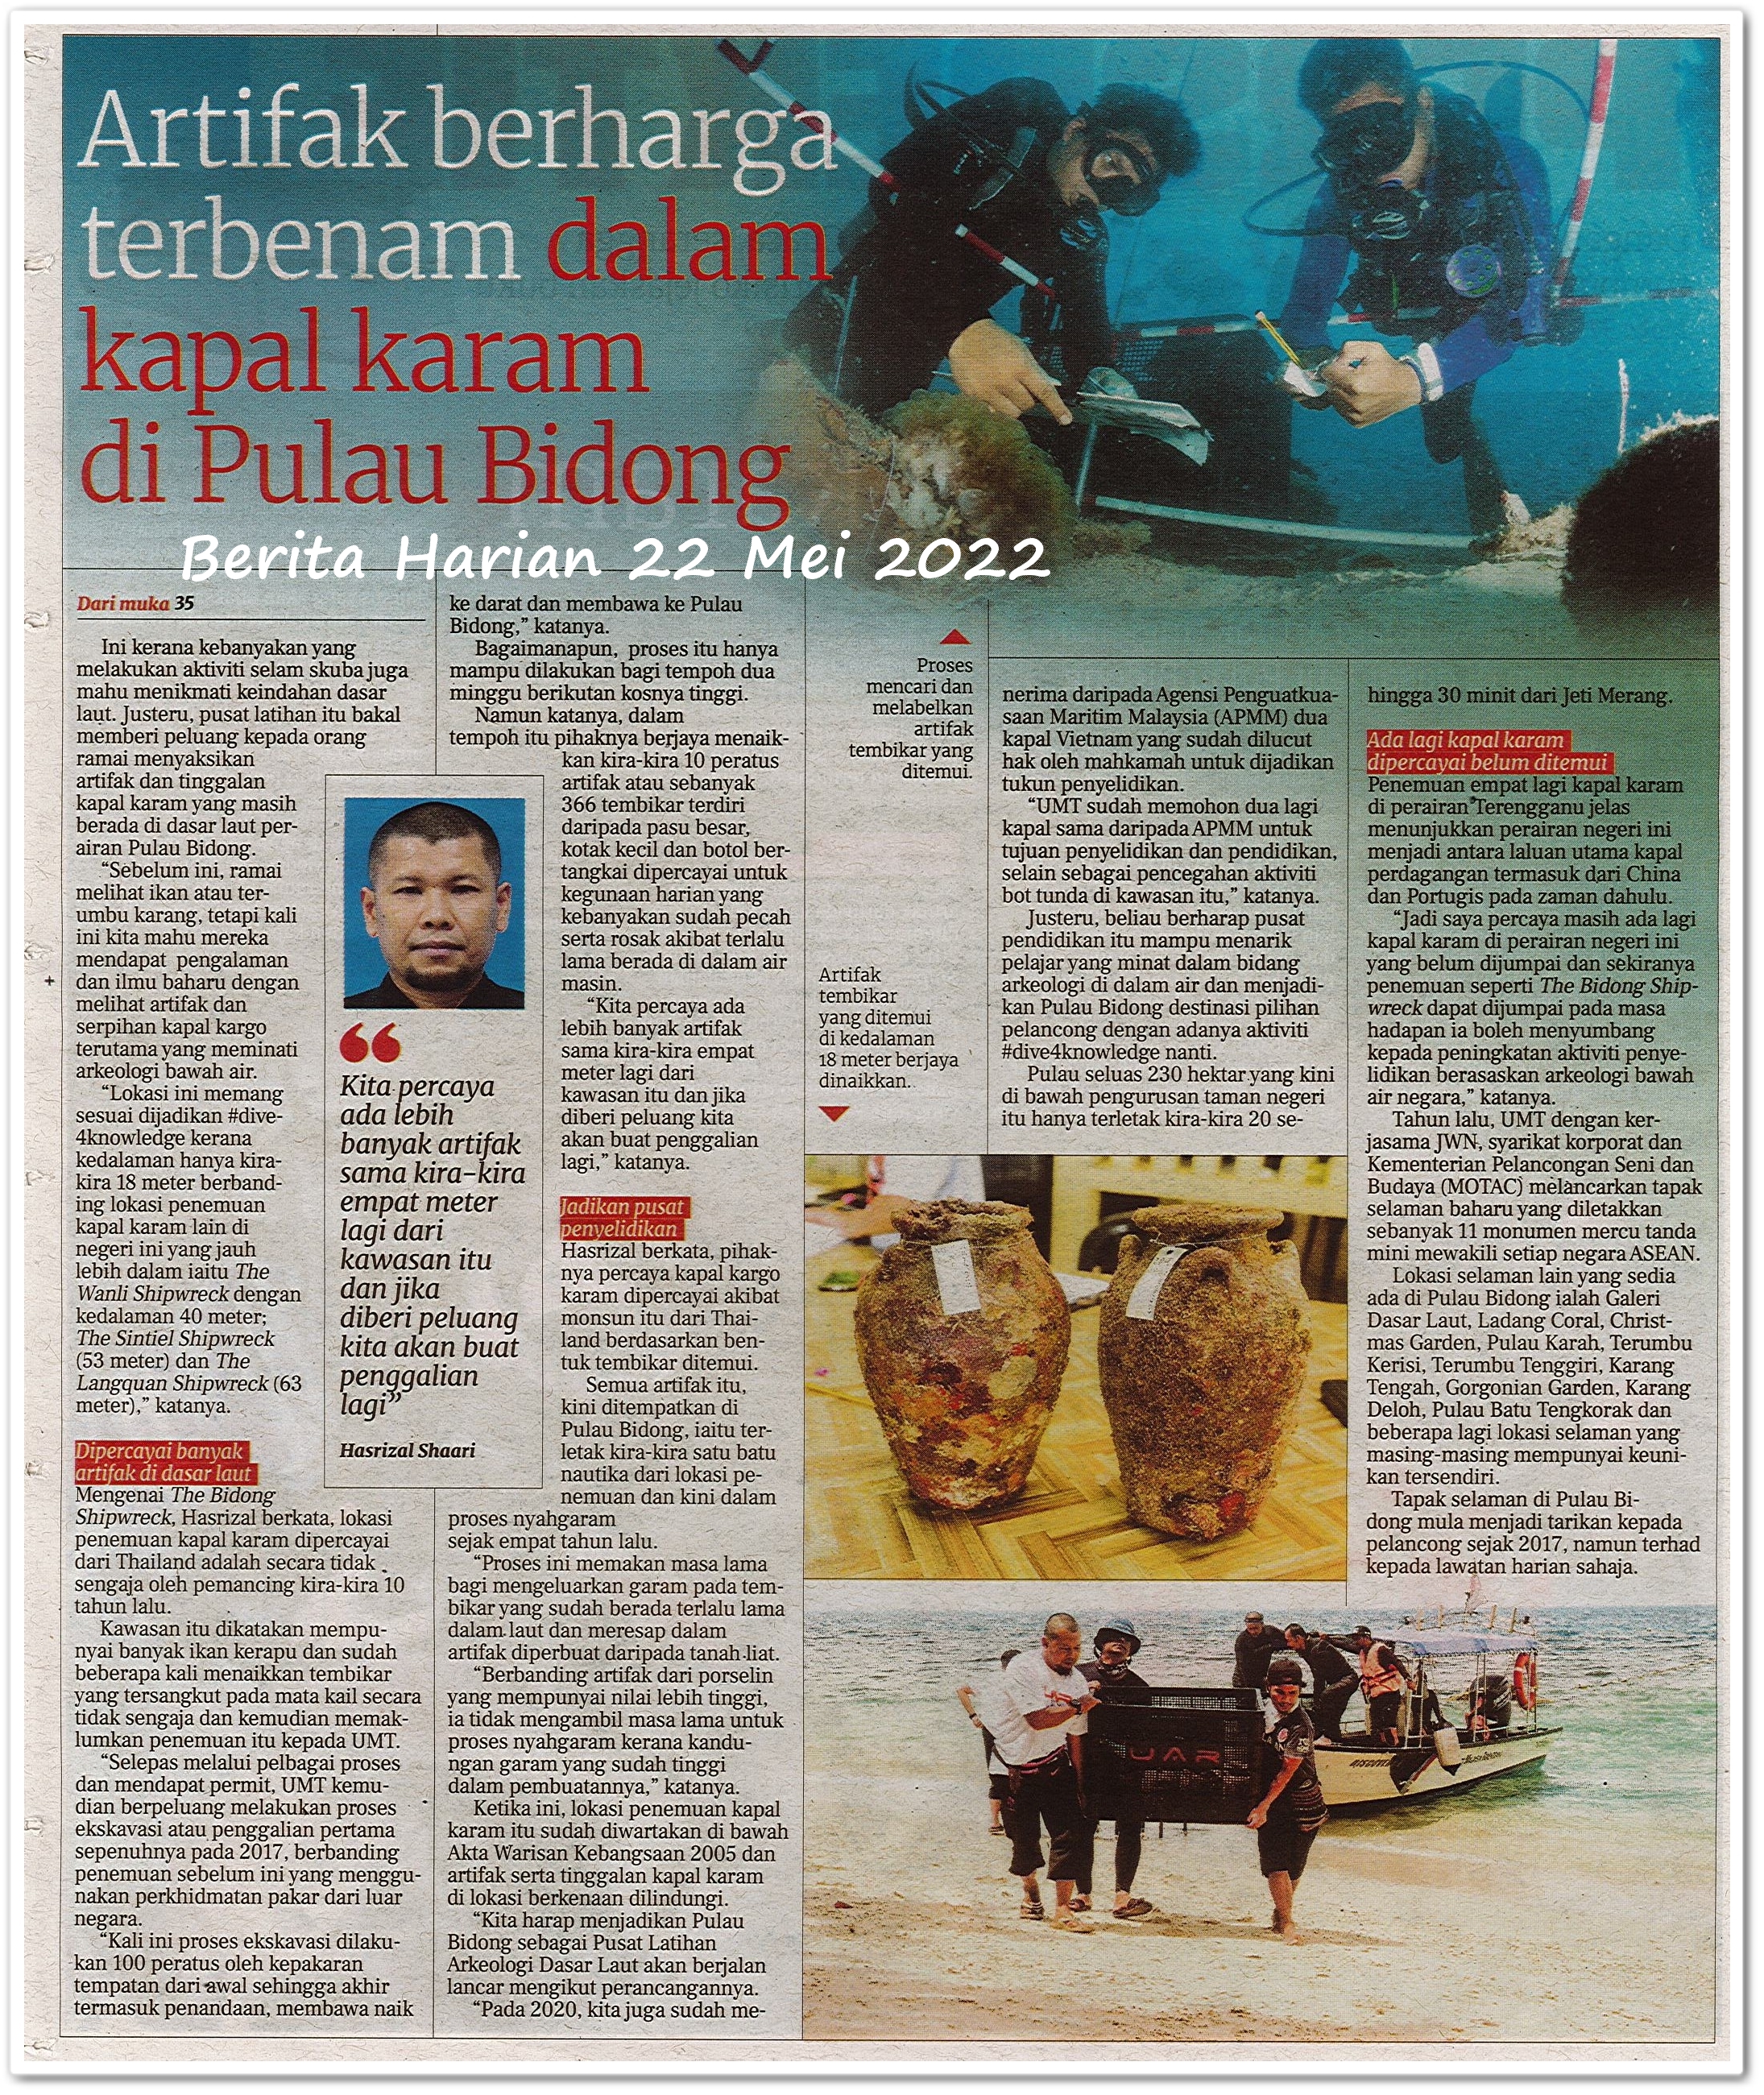 Warisan kapal selam ; Artifak berharga terbenam dalam kapal karam di Pulau Bidong - Keratan akhbar Berita Harian 22 Mei 2022